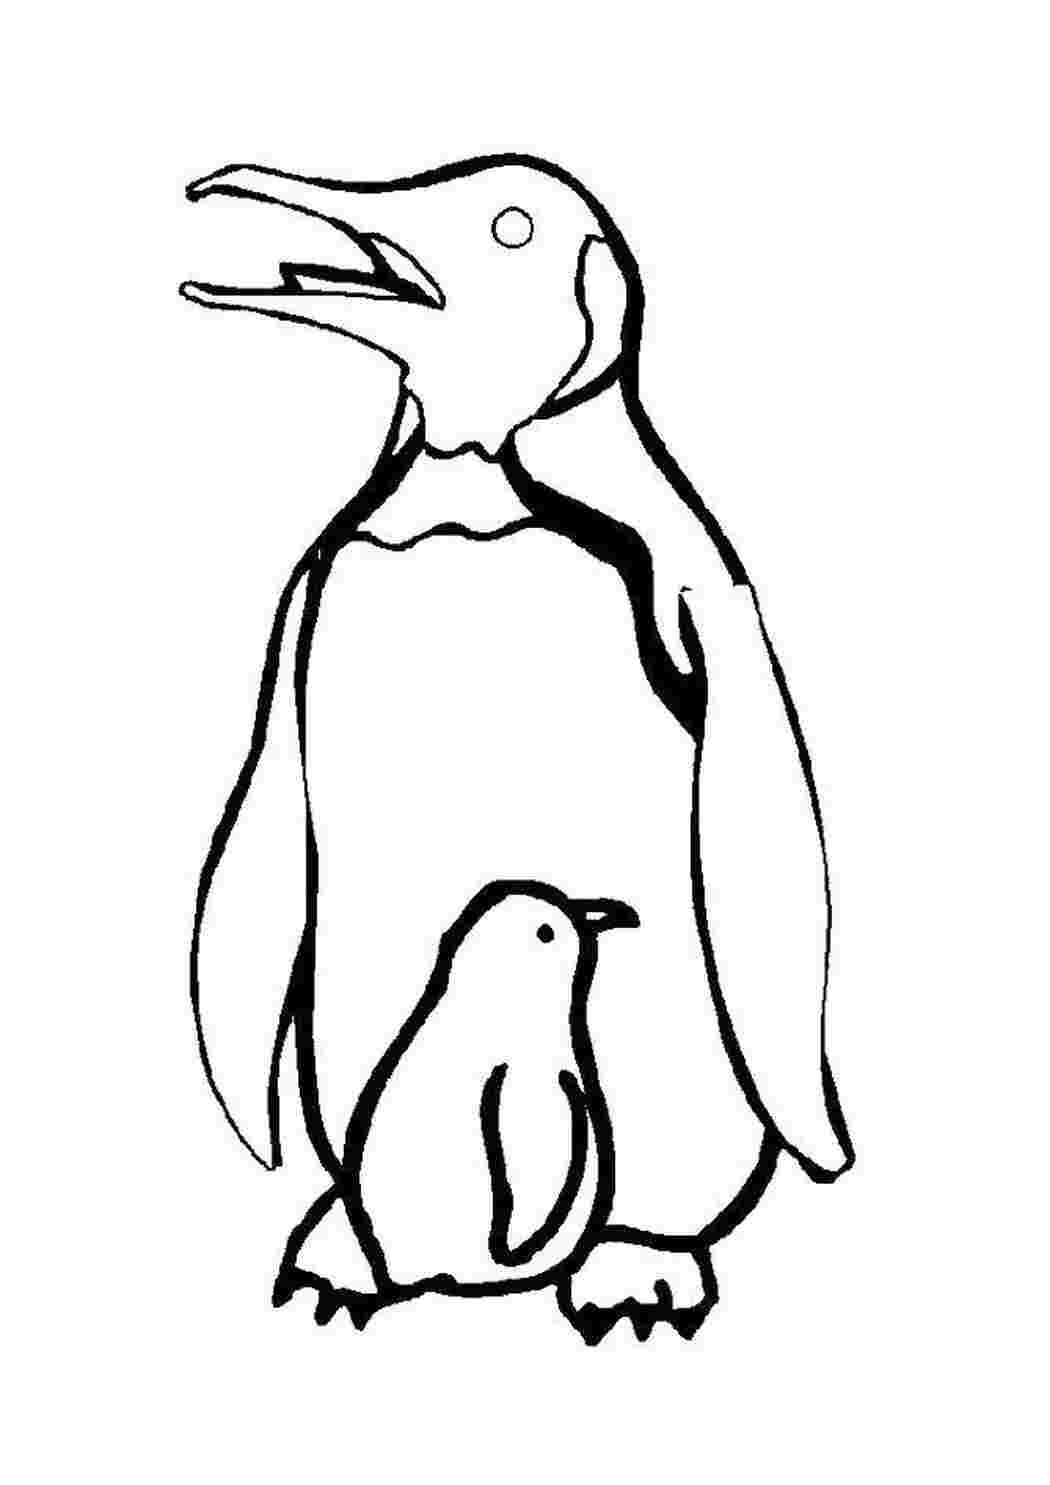 Контур пингвина для раскрашивания